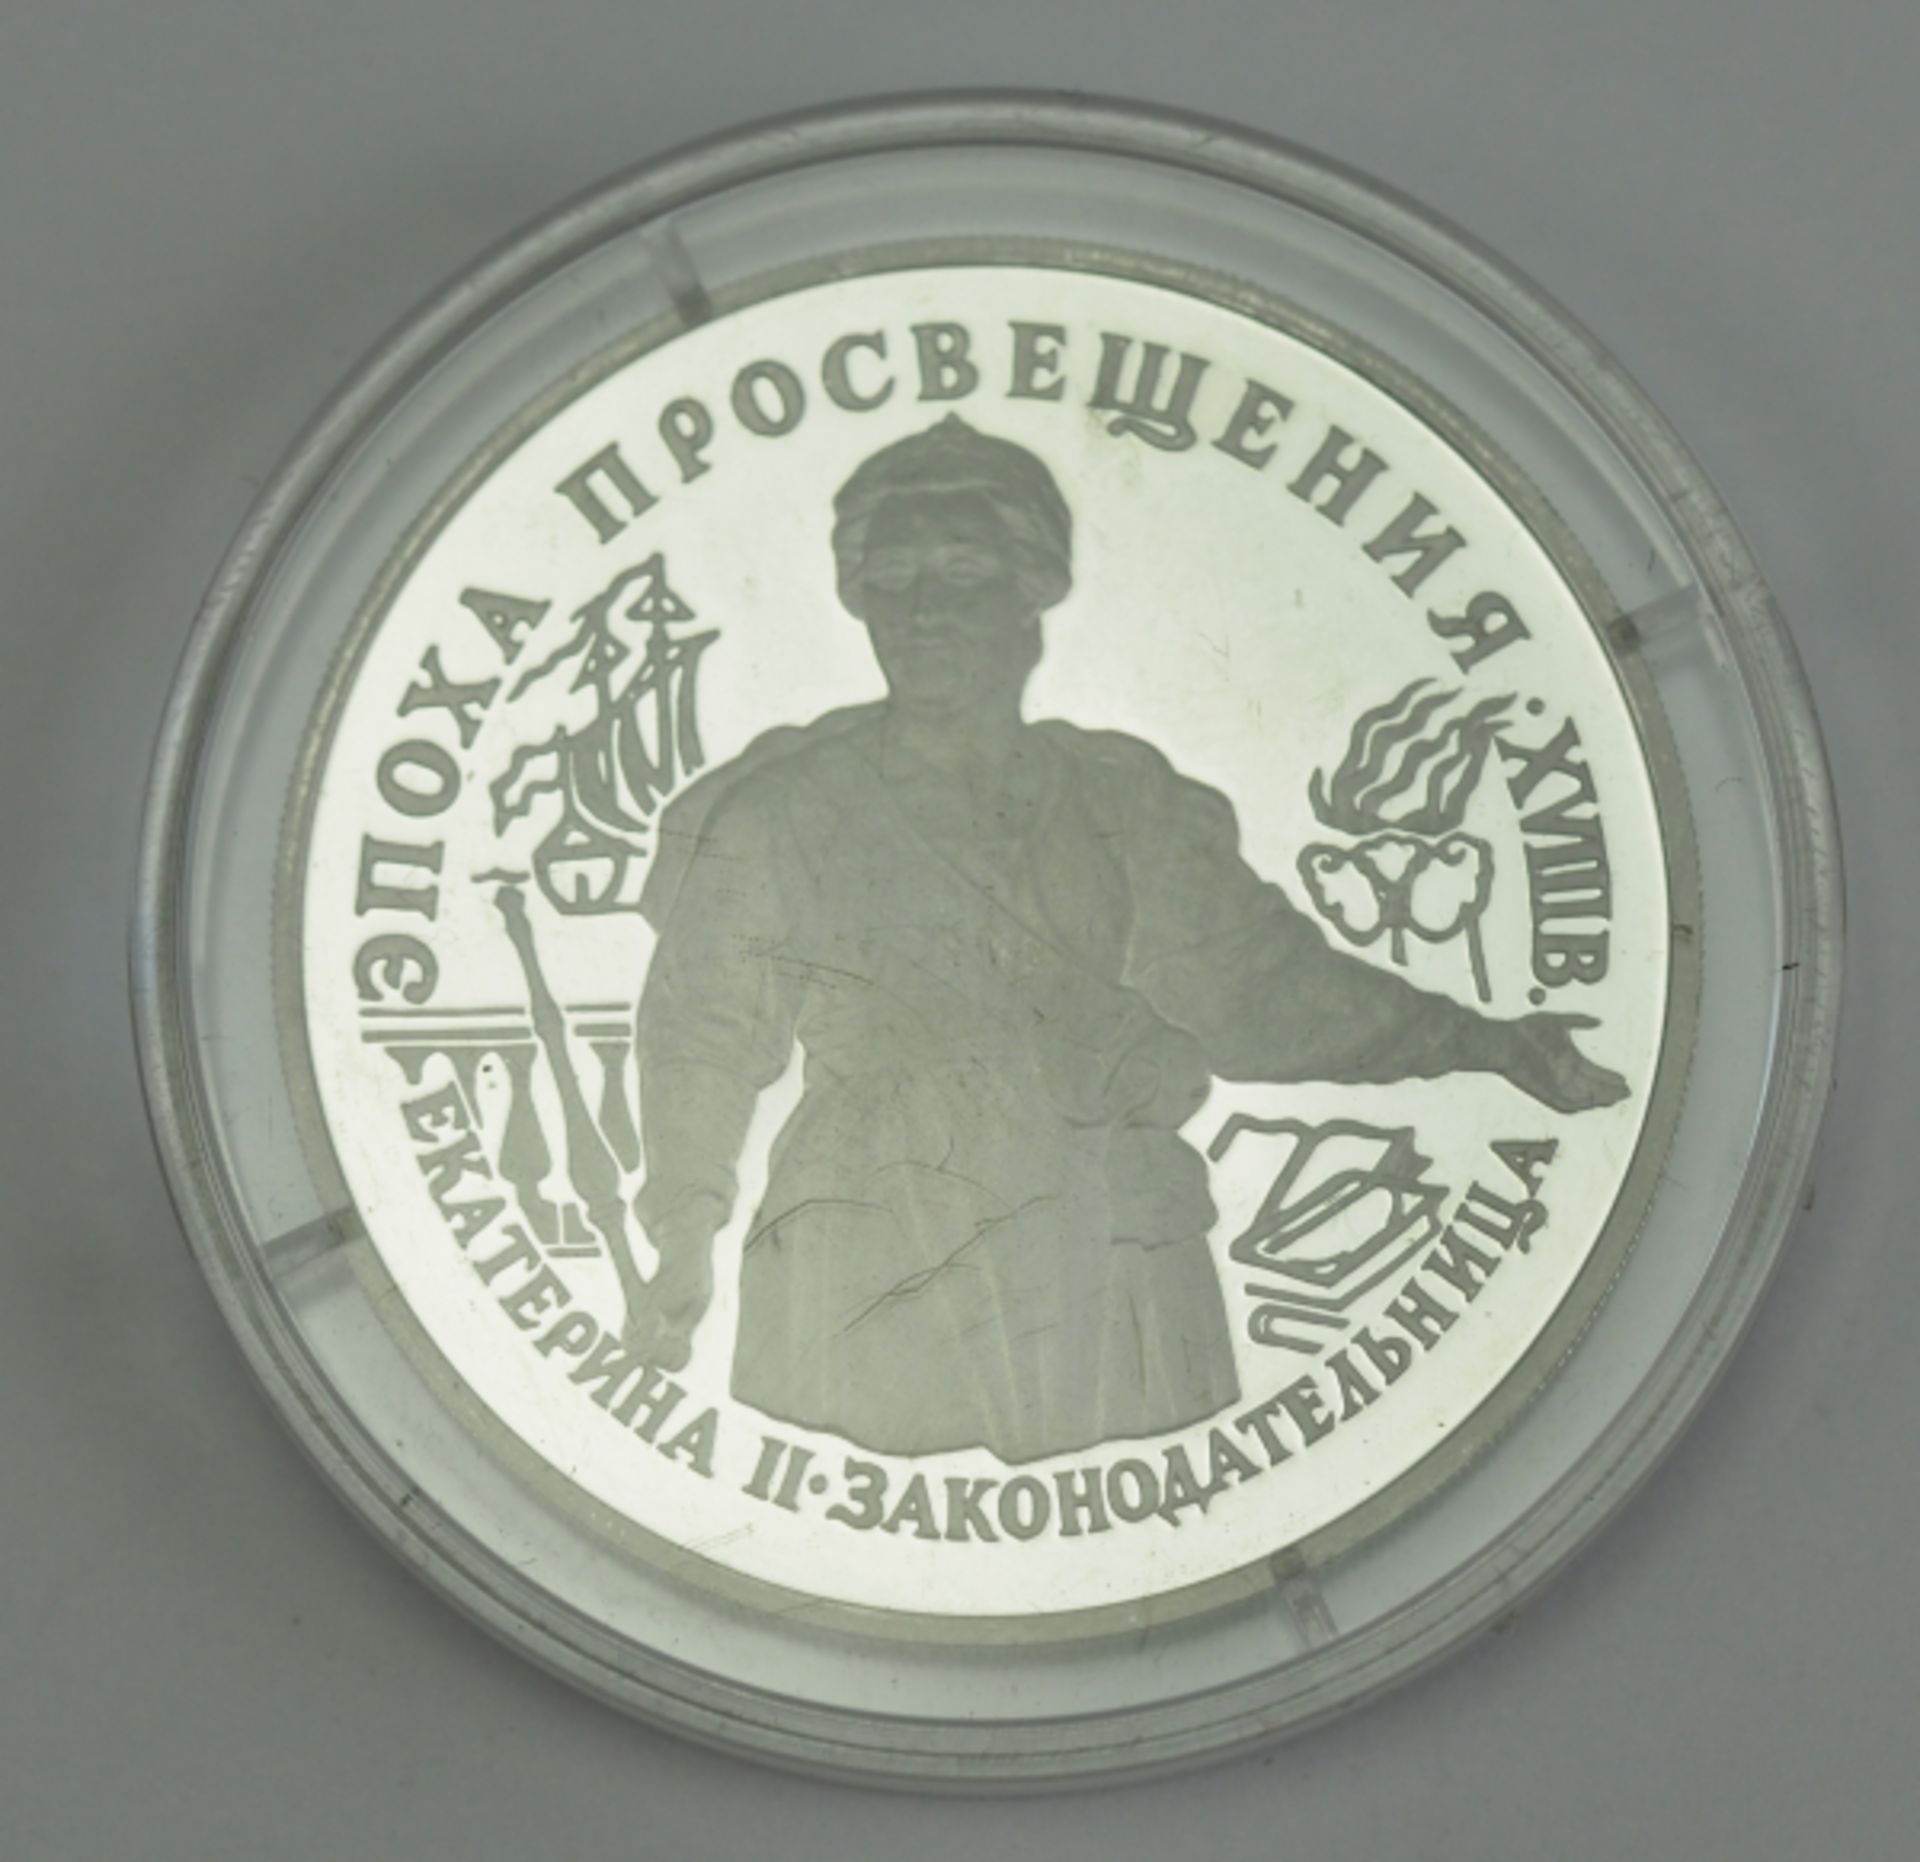 Russland: 25 Rubel - Katharina die Große 1992 - Palladium.Palladium, 1 Unze, in Kapsel.Auflage 5.500 - Bild 2 aus 2